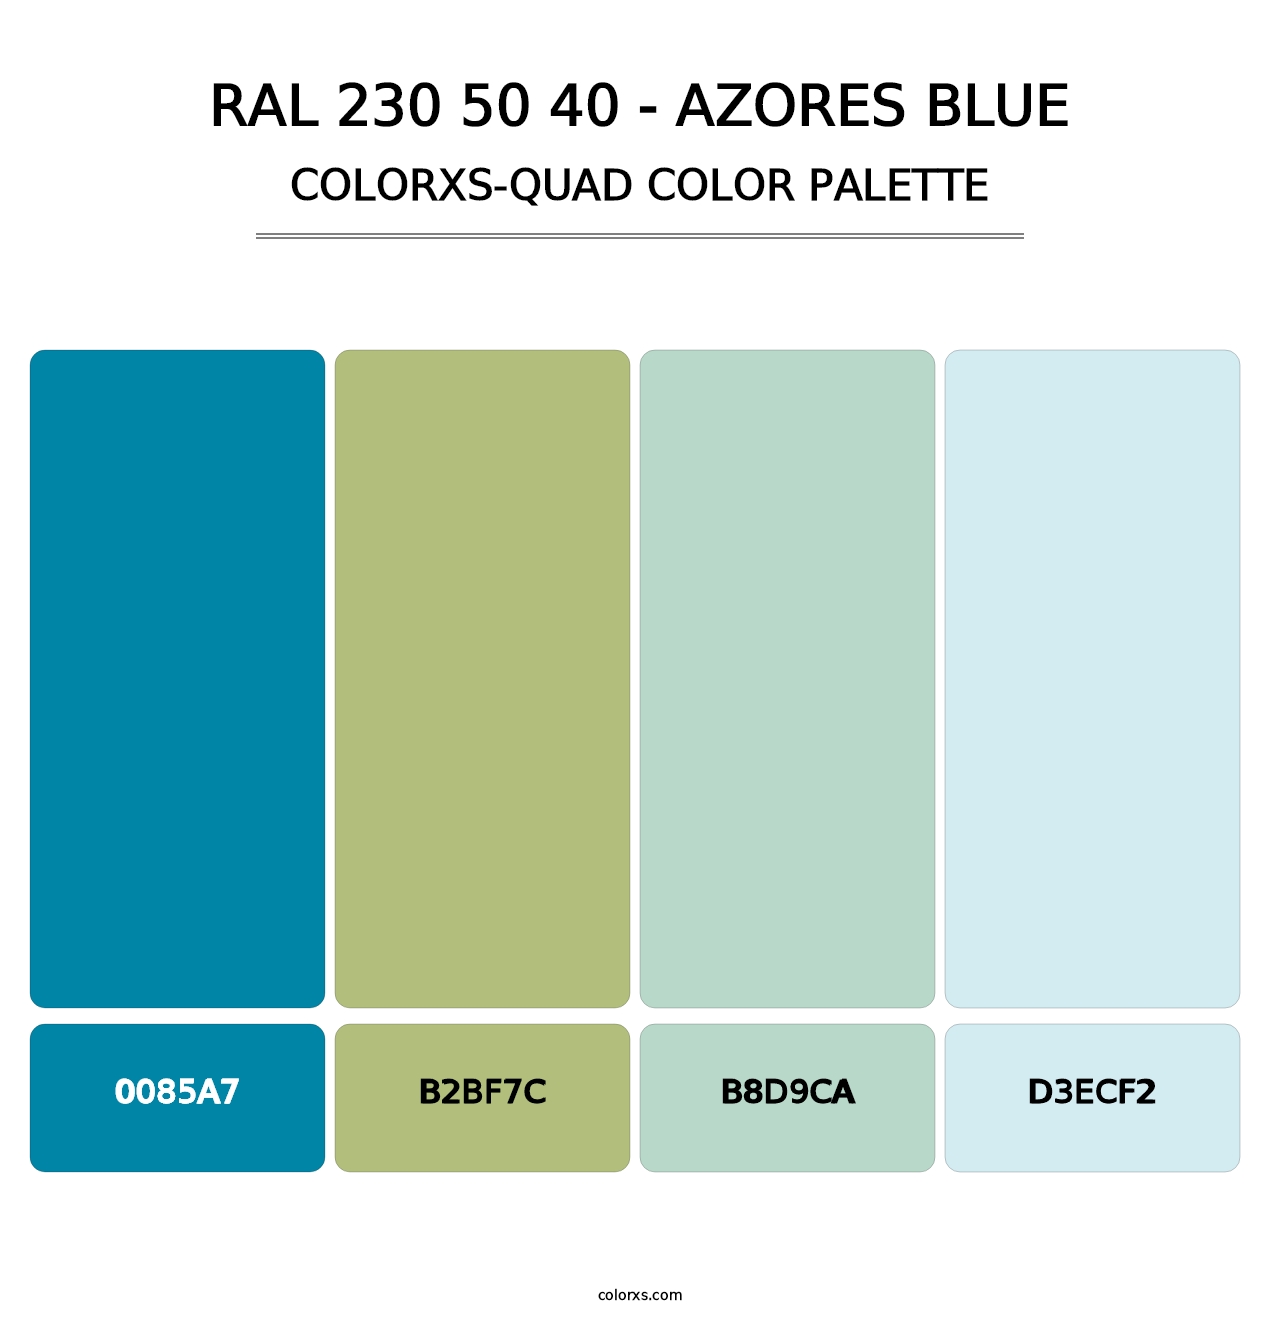 RAL 230 50 40 - Azores Blue - Colorxs Quad Palette